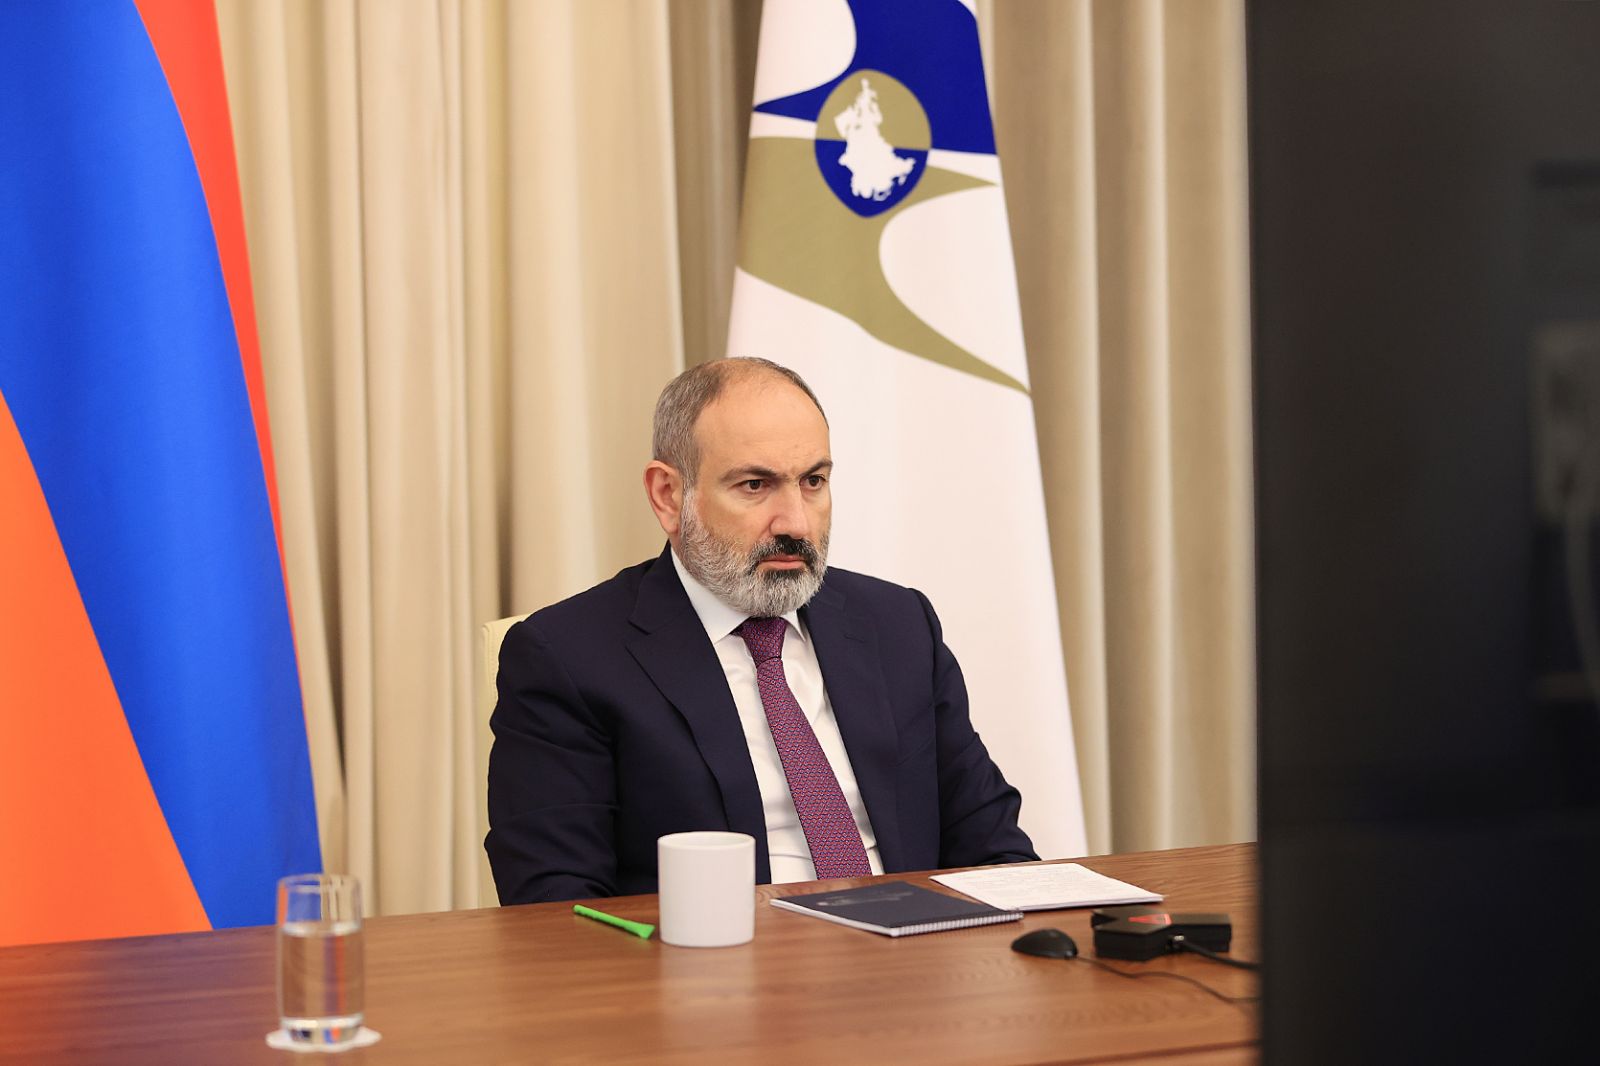 Տեխնոլոգիաները տնտեսության մեջ բեկում մտցնելու հնարավորություն են, և այդ ոլորտը ռազմավարական նշանակություն ունի Հայաստանի համար. վարչապետ